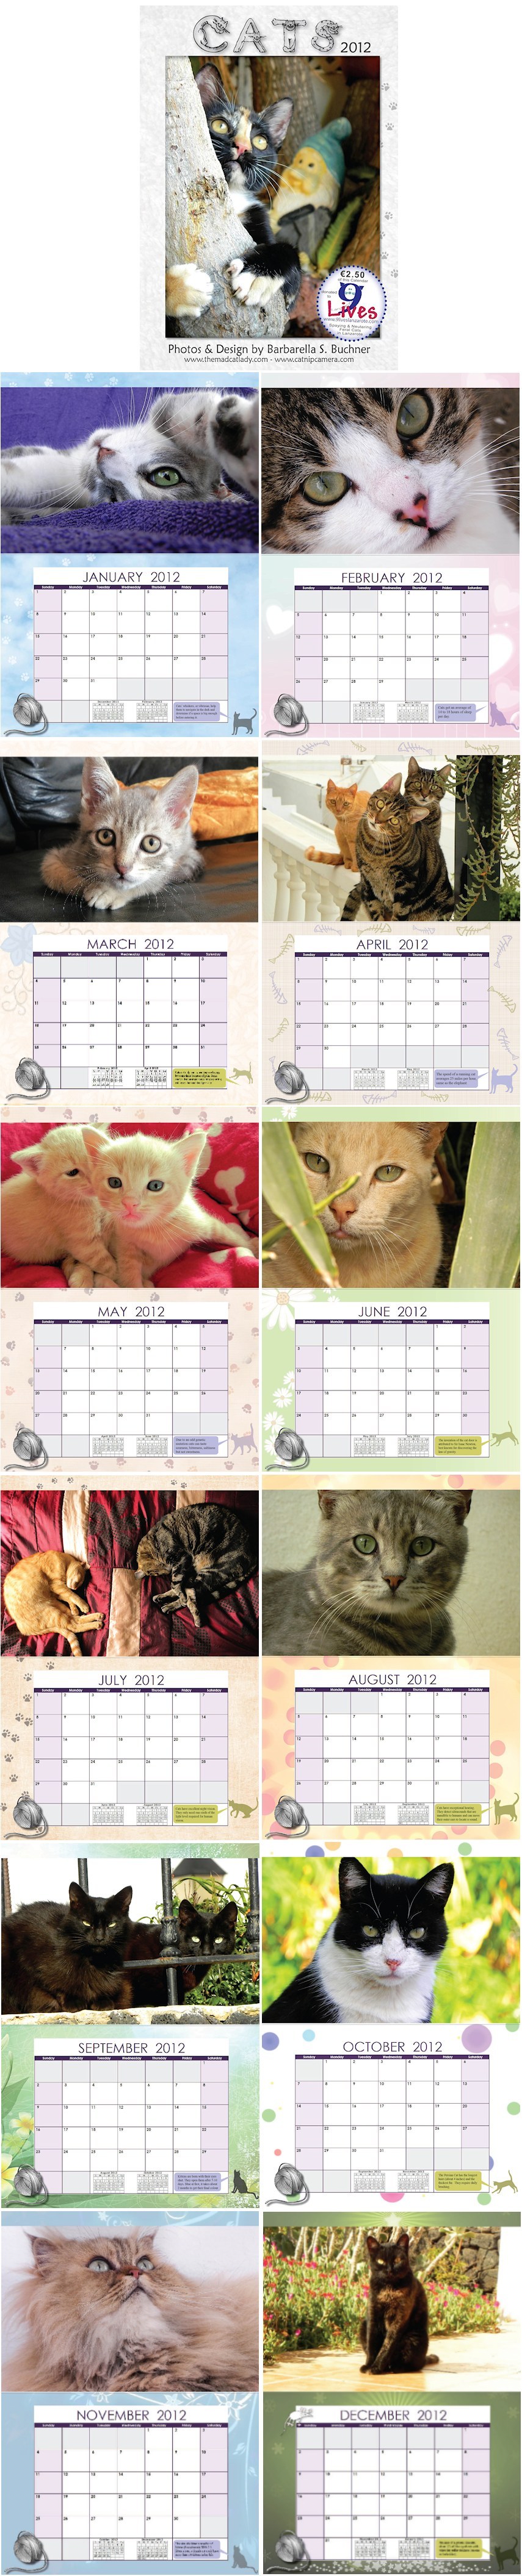 Cat Calendar 2012 Update